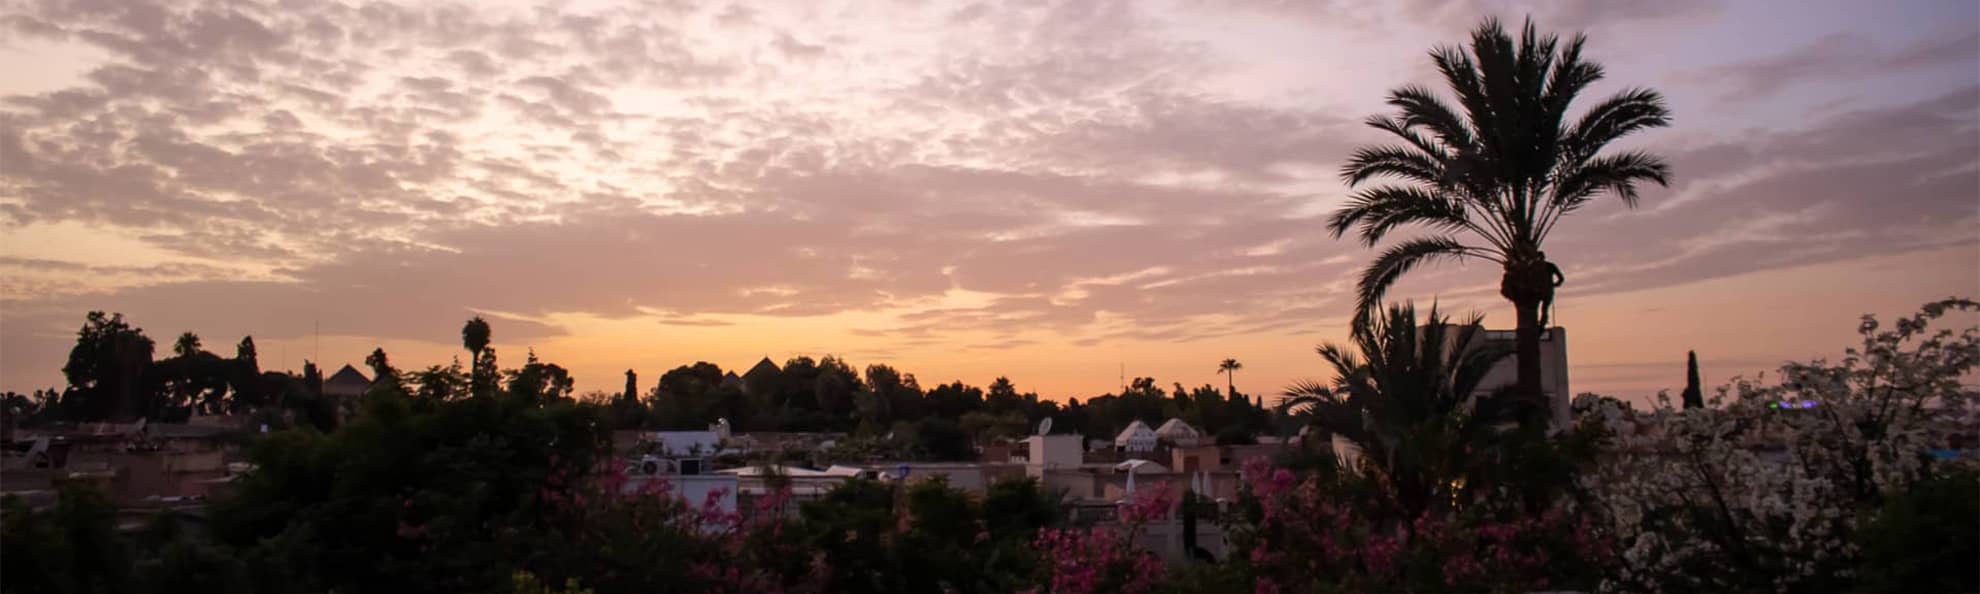 Laeti-event-sejours-au-maroc-coucher-de-soleil-sur-les-terrasses-de-marakech-en-automne